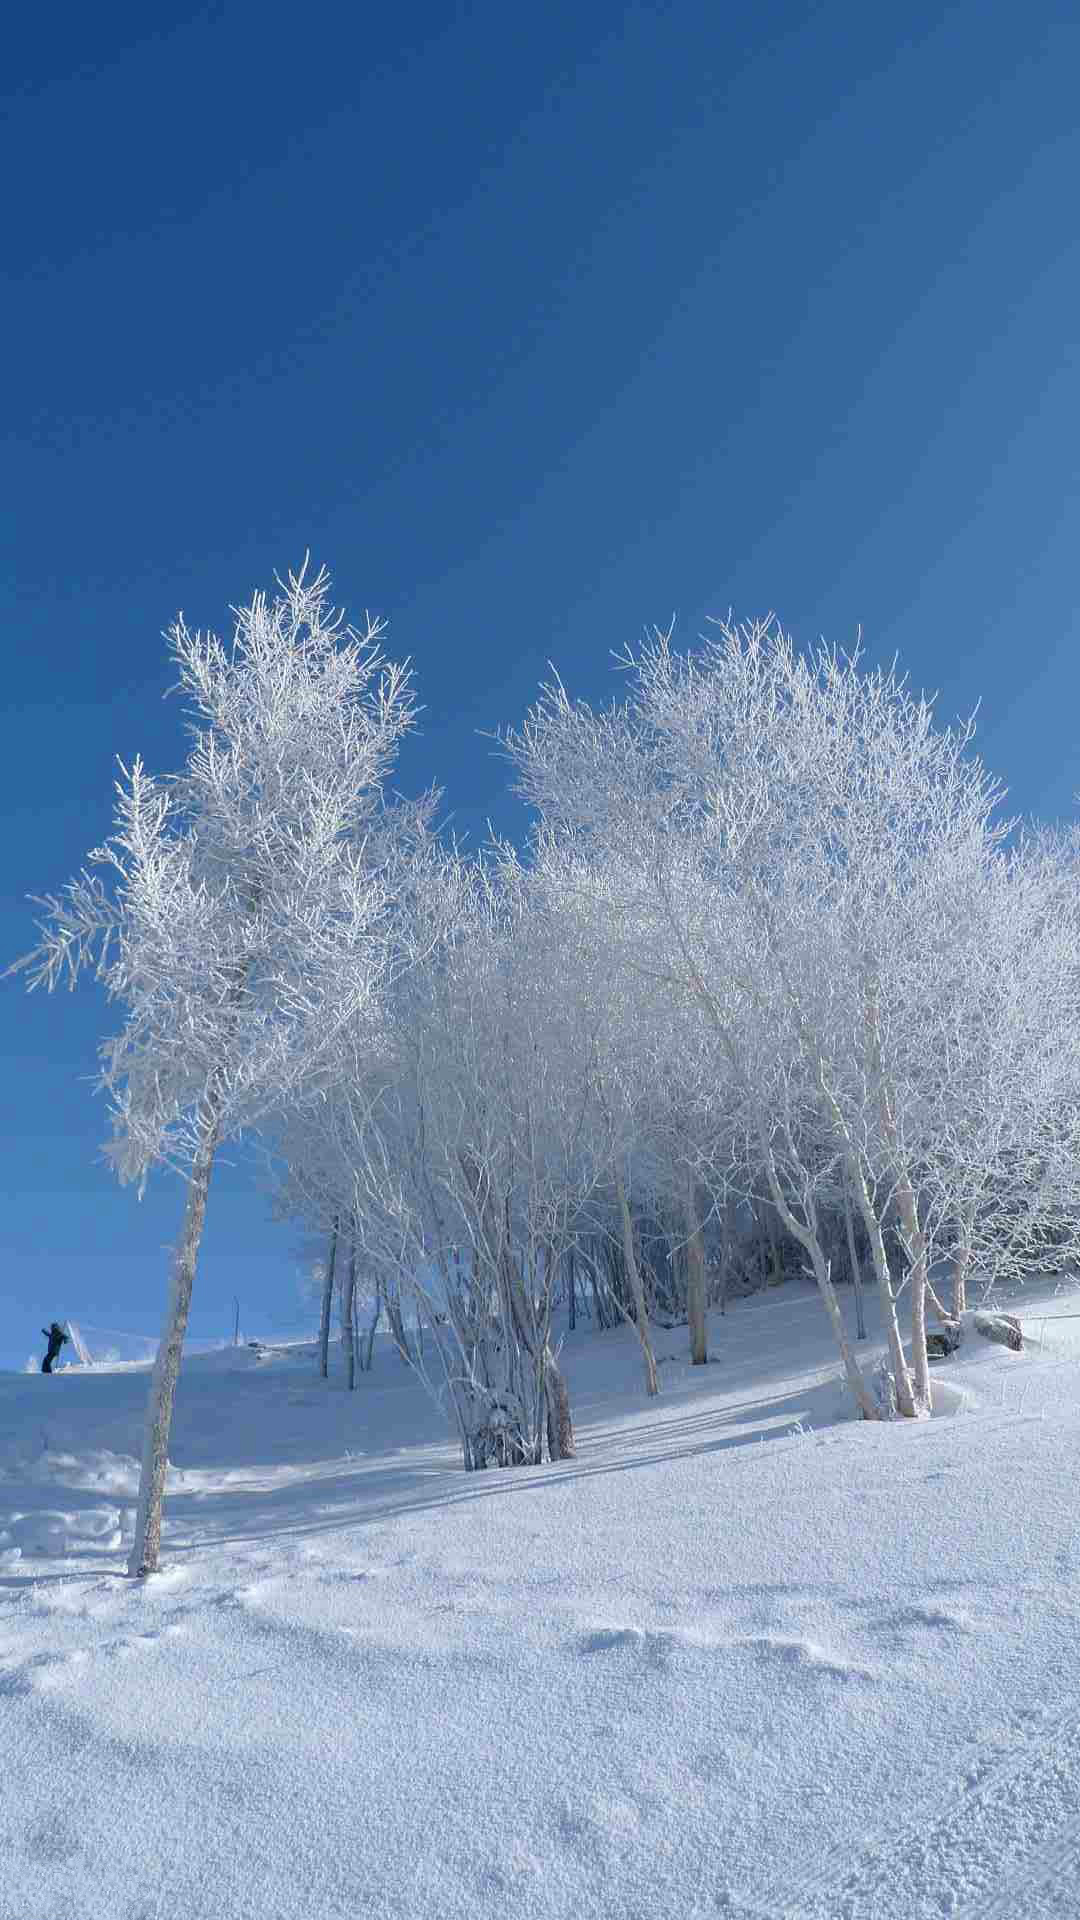 Winter Snowy Field iPhone Wallpaper